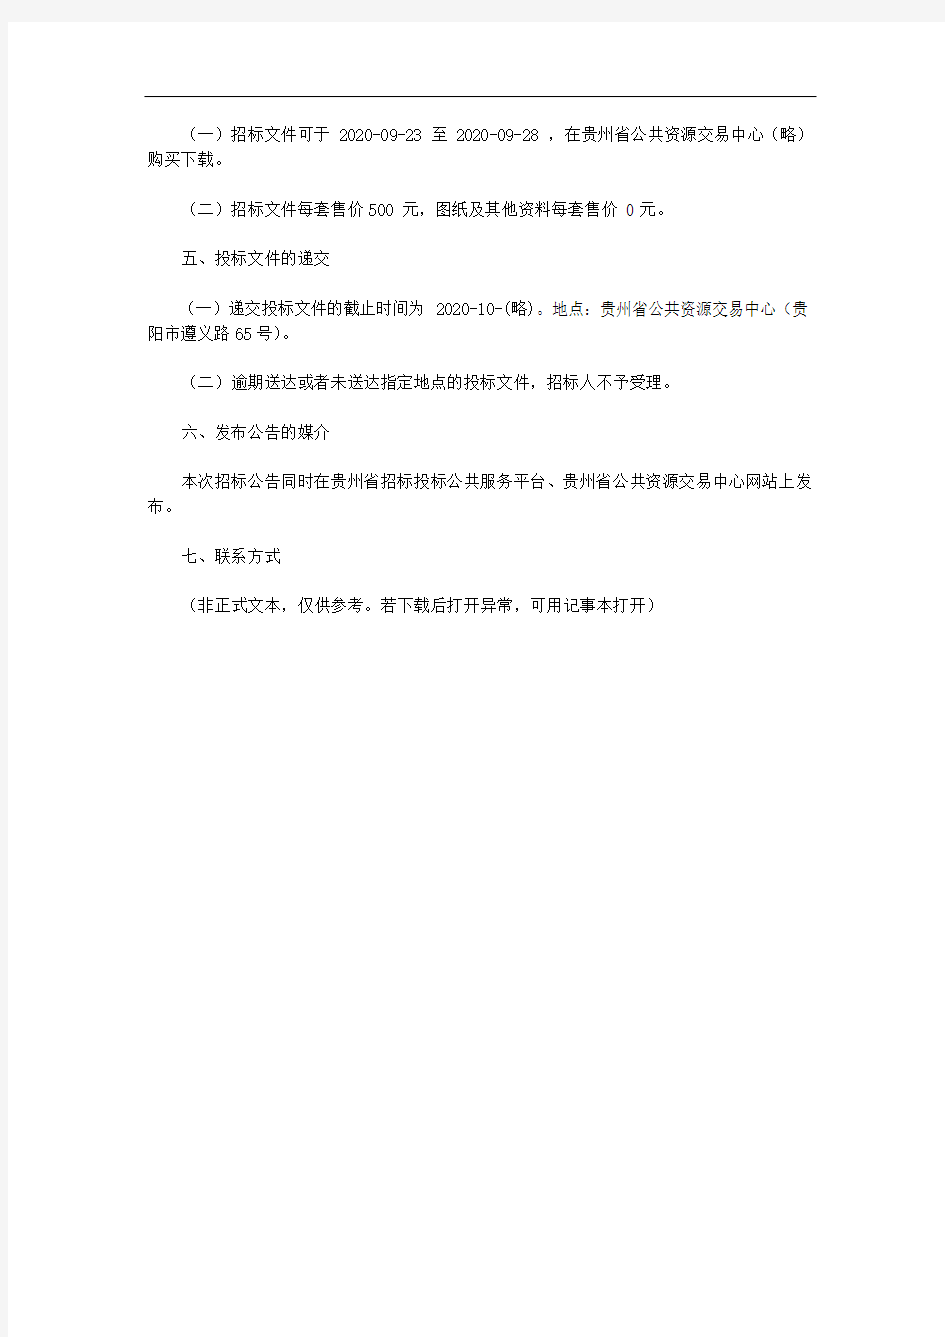 长顺县县城污水管网扩建工程勘察、设计招标公告招标公告